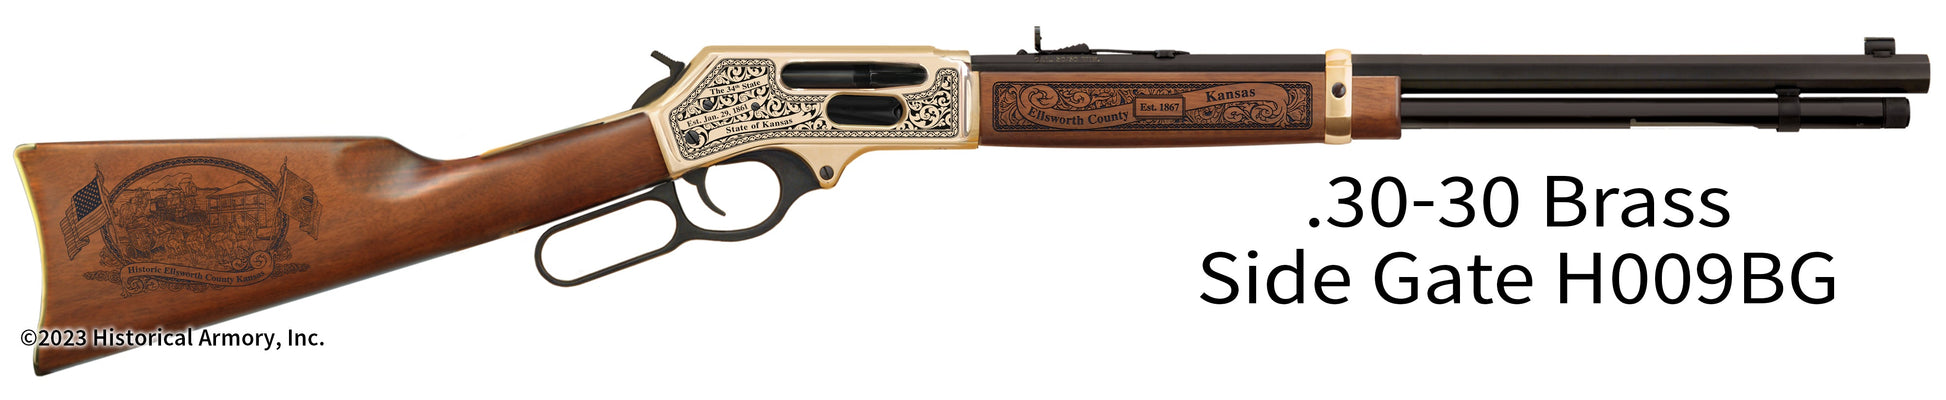 Ellsworth County Kansas Engraved Henry .30-30 Brass Side Gate Rifle